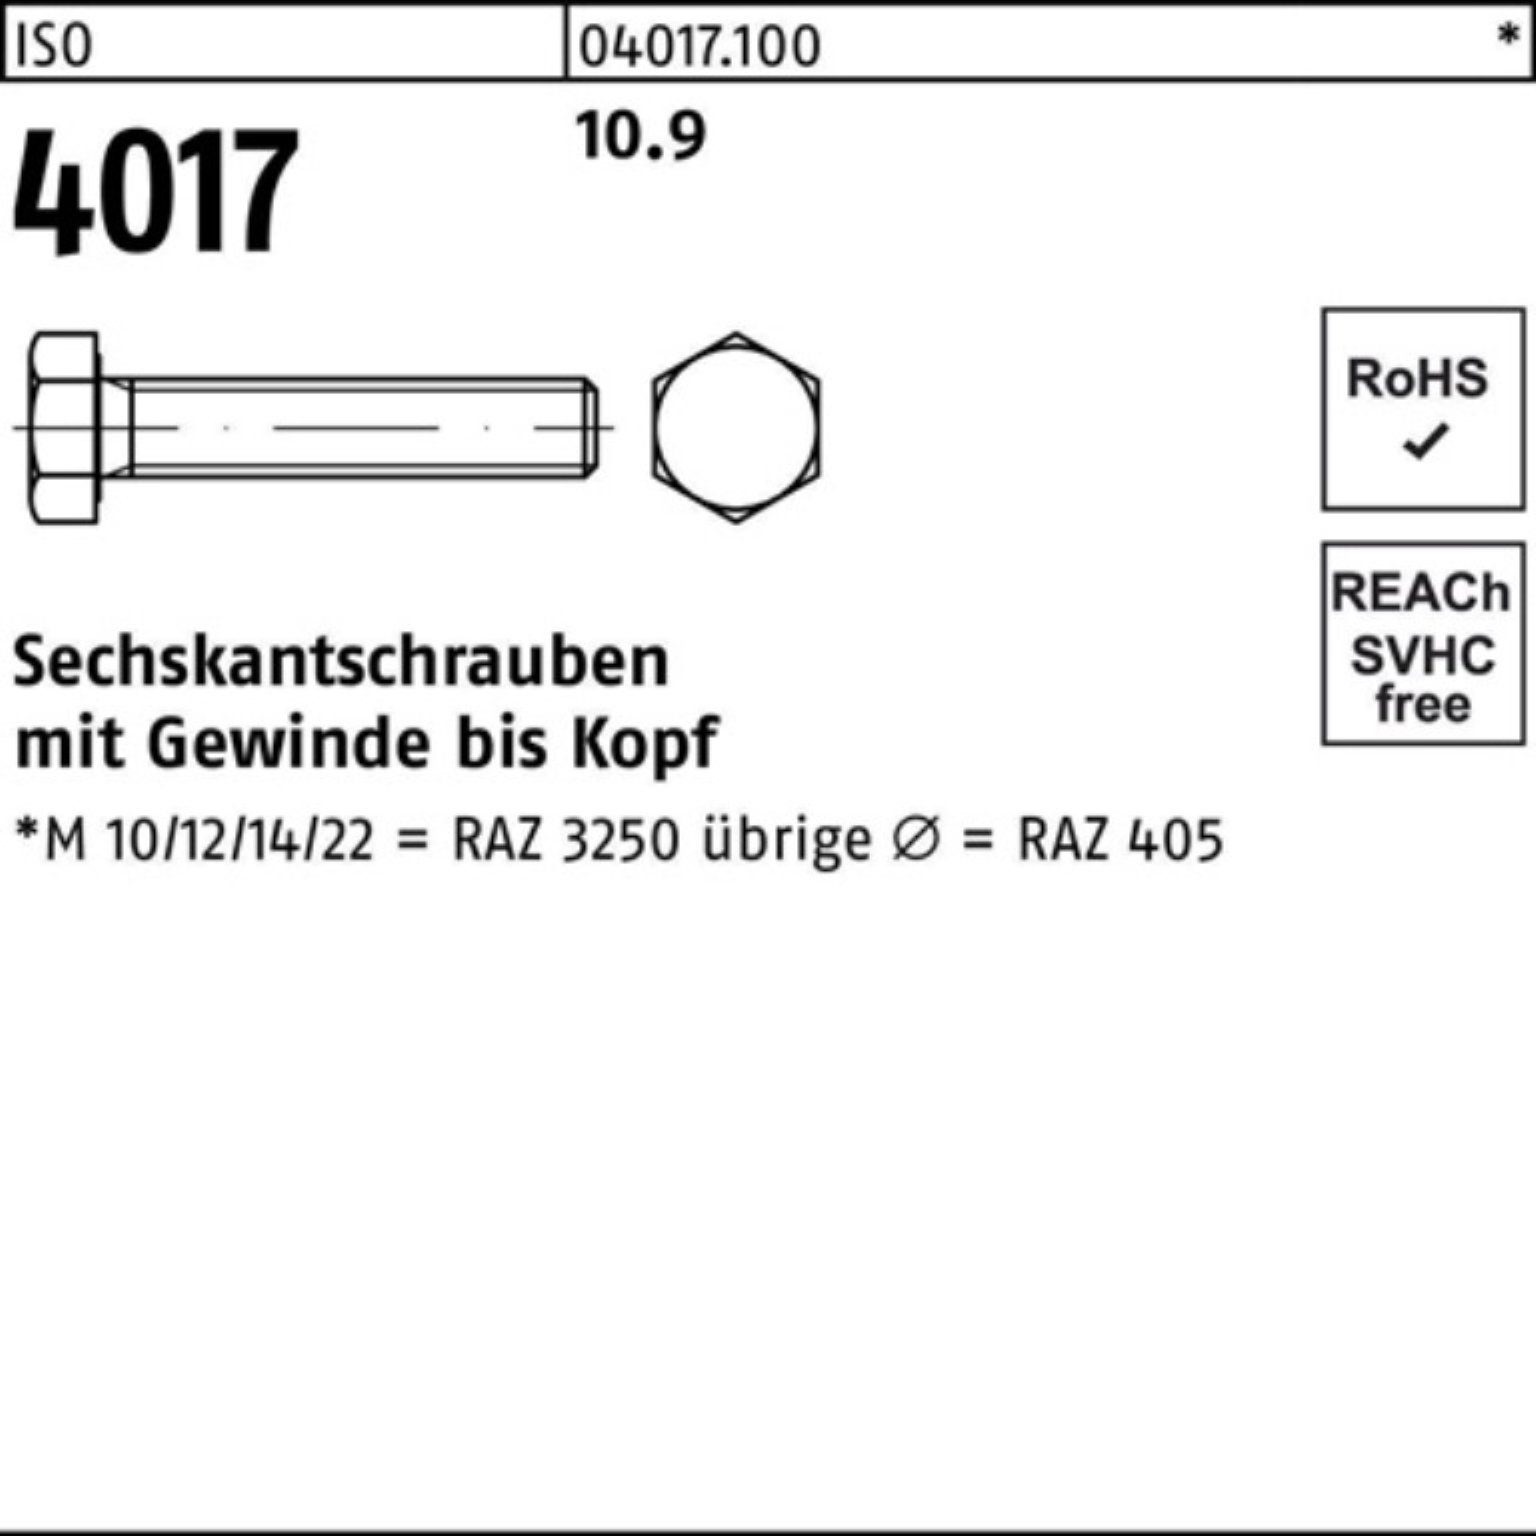 Bufab Sechskantschraube M22x 10.9 Sechskantschraube VG 100er 10 120 4 Pack ISO ISO Stück 4017